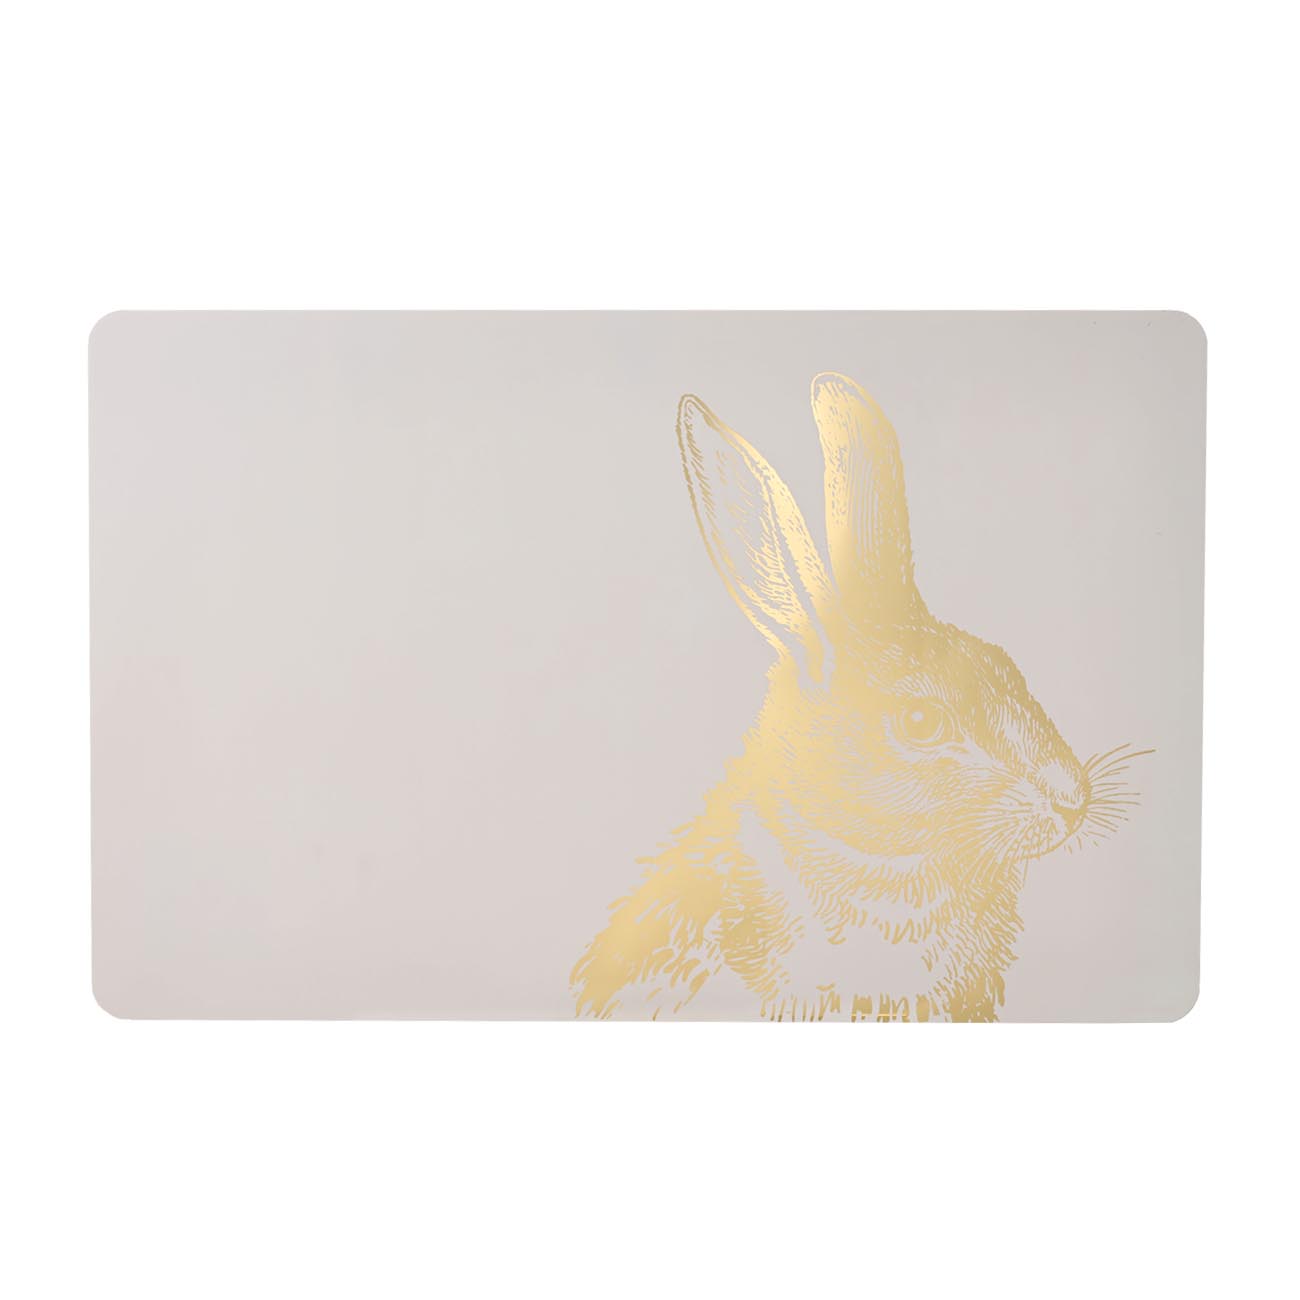 Салфетка под приборы, 28х43 см, ПЭТ, прямоугольная, бежевая, Кролик, Rabbit - фото 1